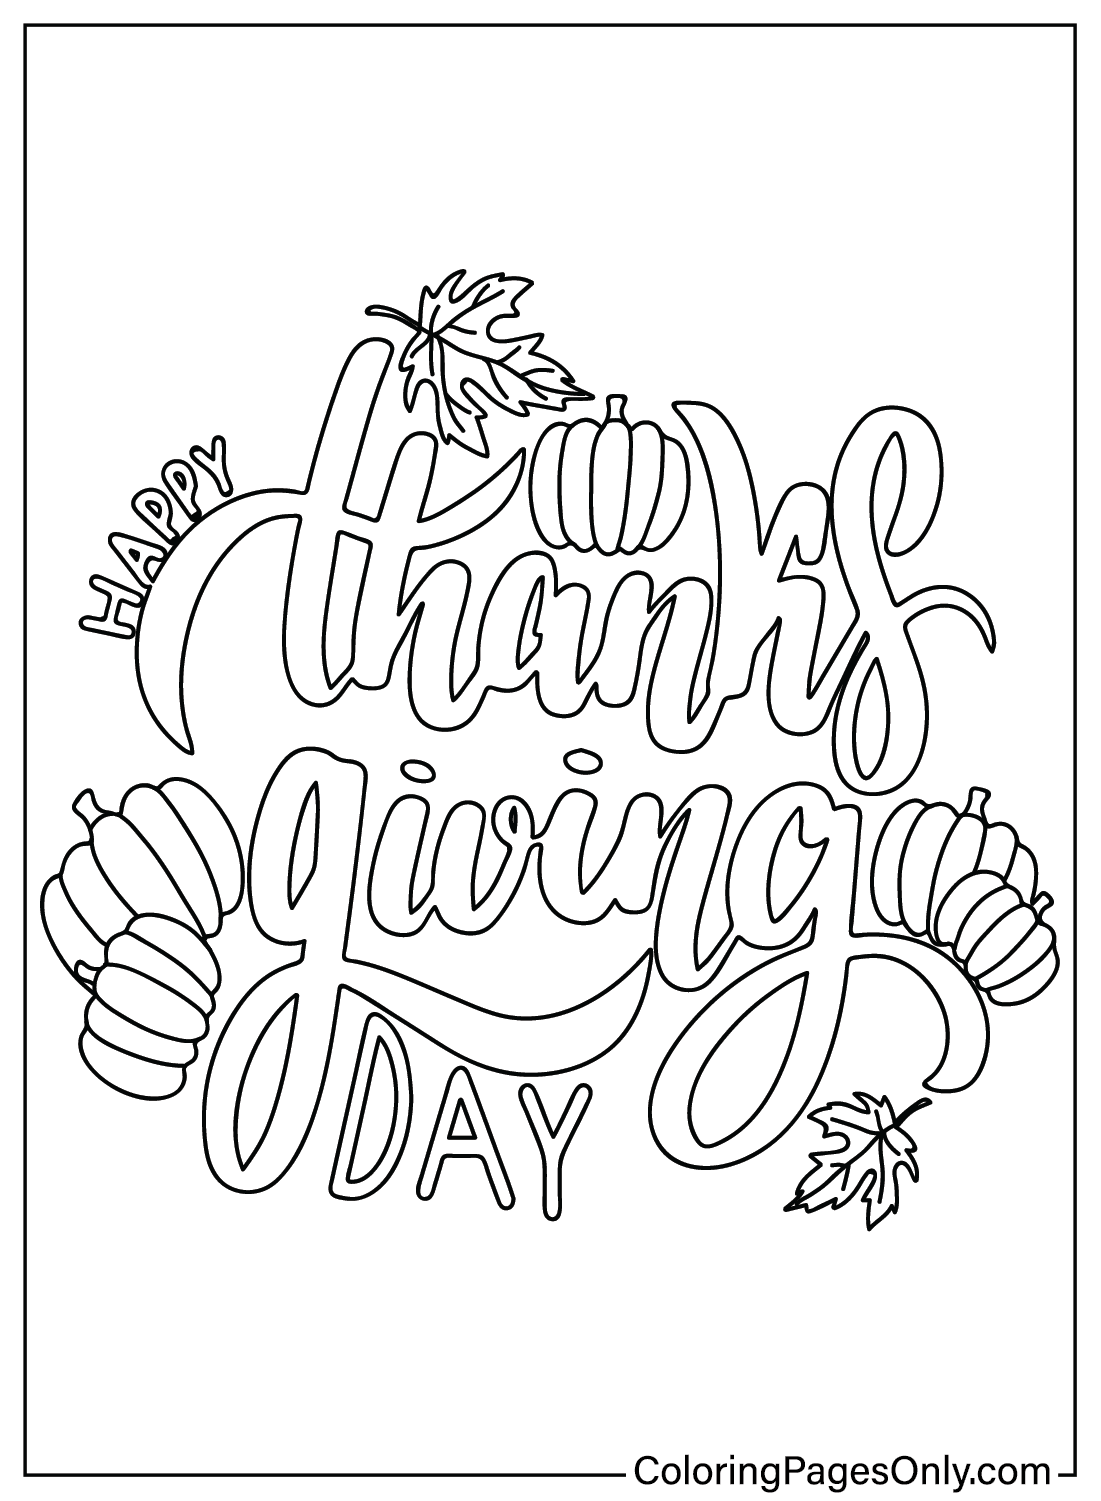 Página para colorir de Ação de Graças grátis no Dia de Ação de Graças